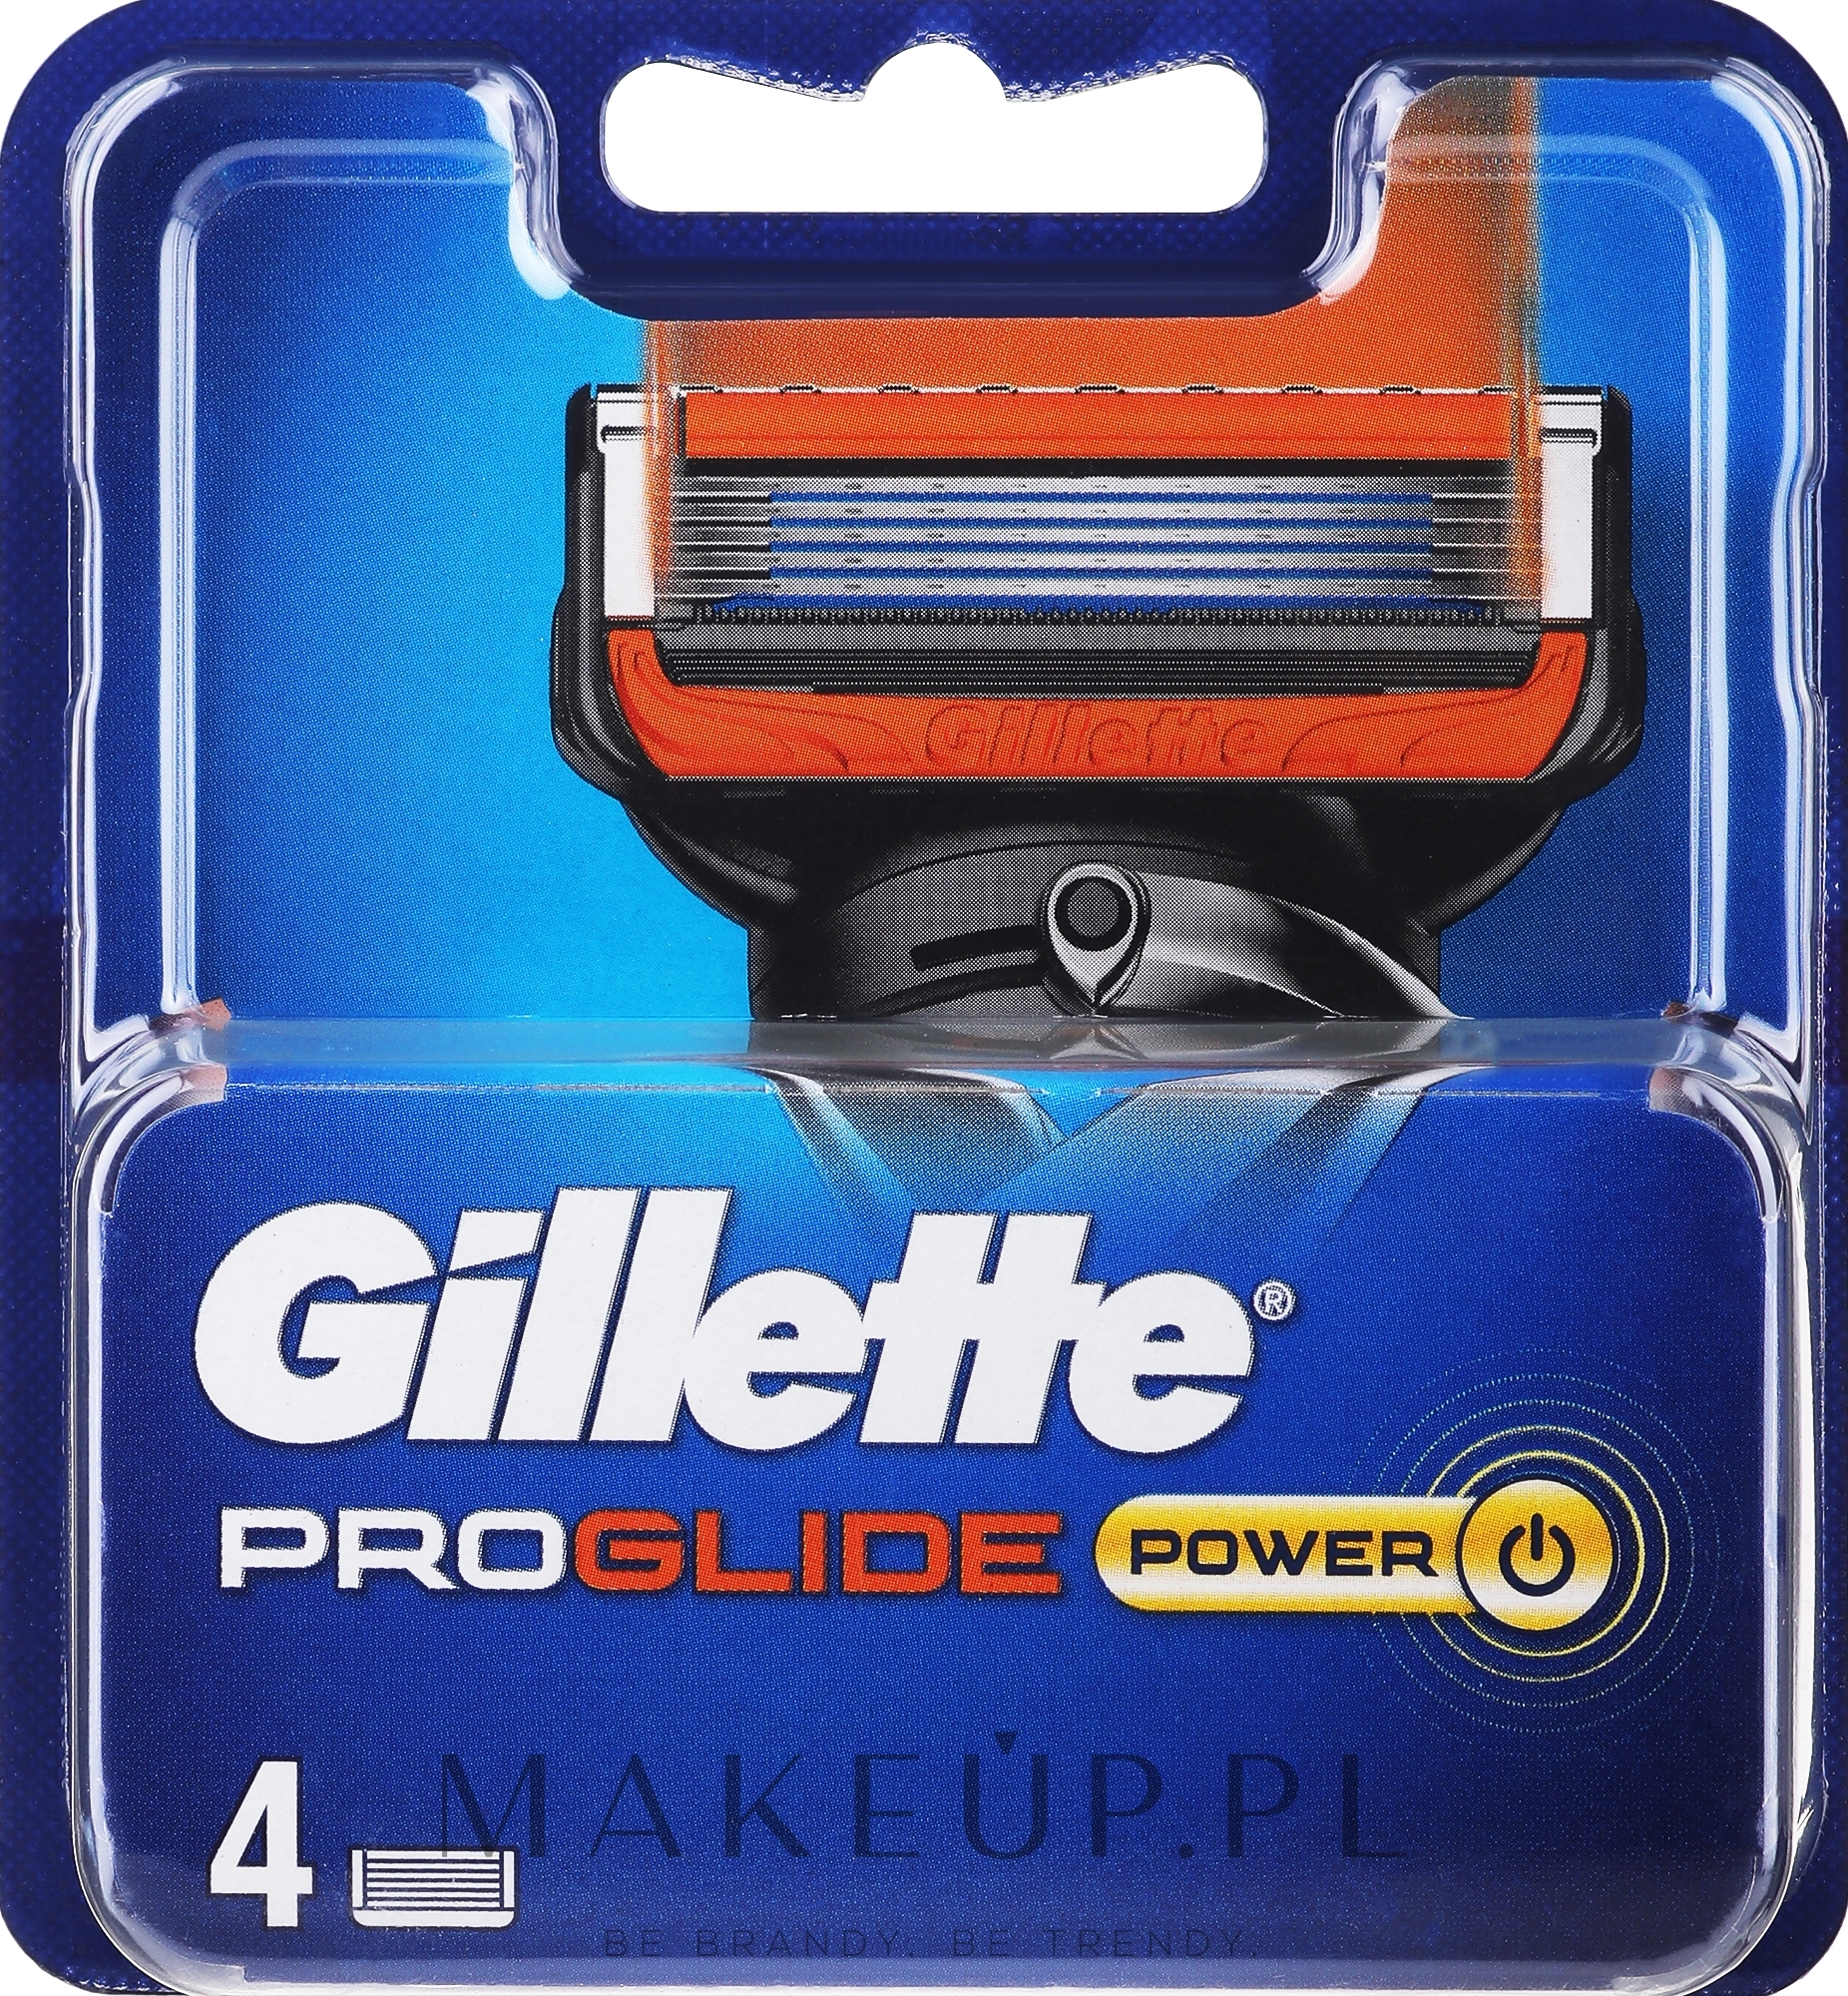 Wymienne wkłady do golenia, 4 szt. - Gillette Fusion5 ProGlide Power — Zdjęcie 4 szt.